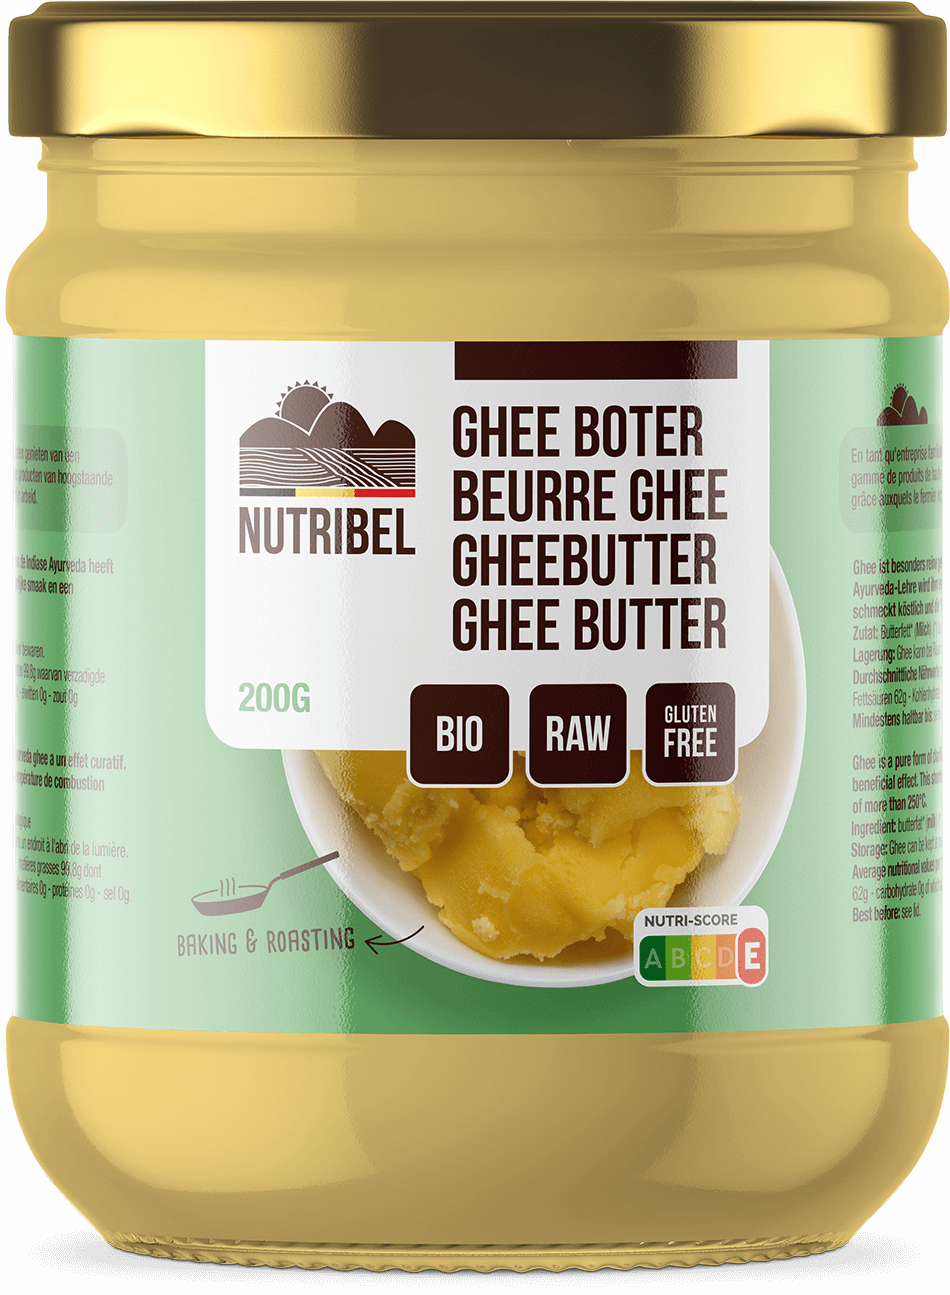 Nutribel Beurre ghee bio 200g